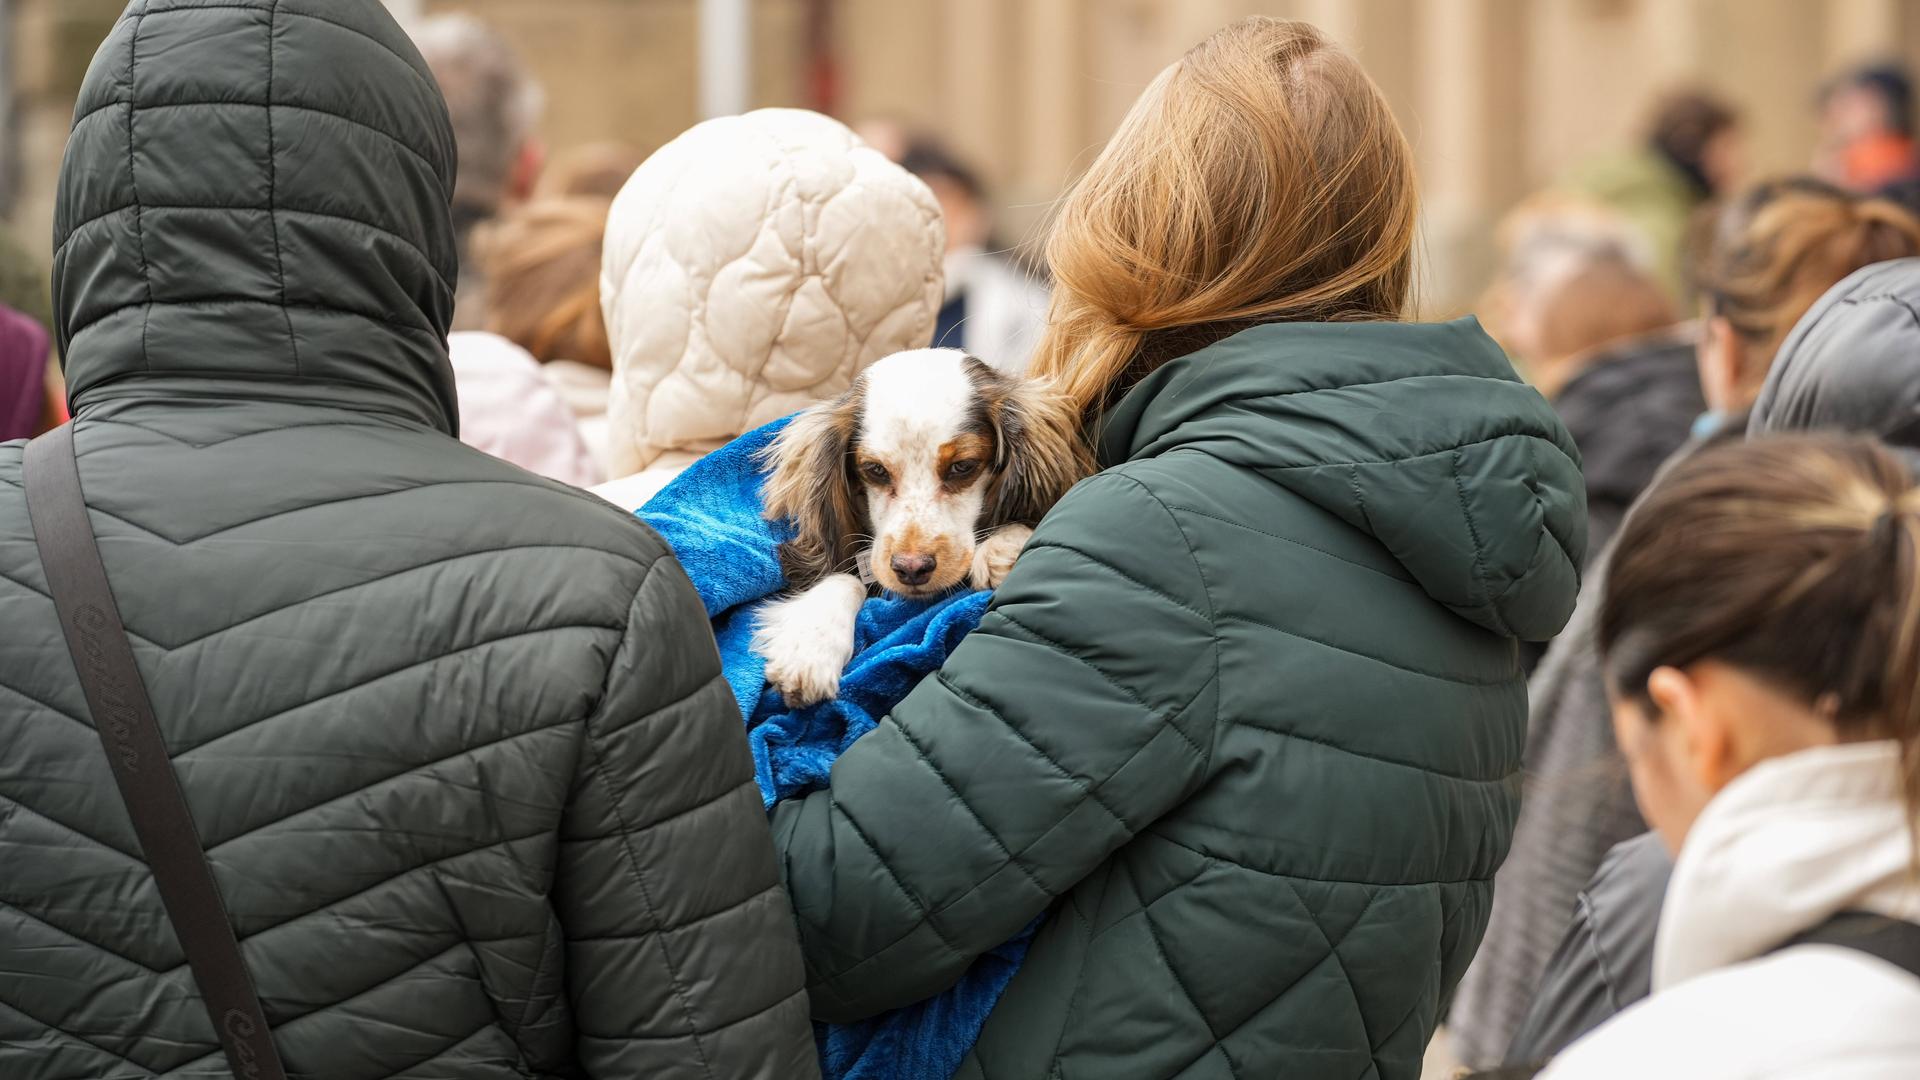 Ukrainische Flüchtlinge warten vorm Rathaus in Charlottenburg in einer langen Schlange. Eine Frau trägt einen Hund auf dem Arm.